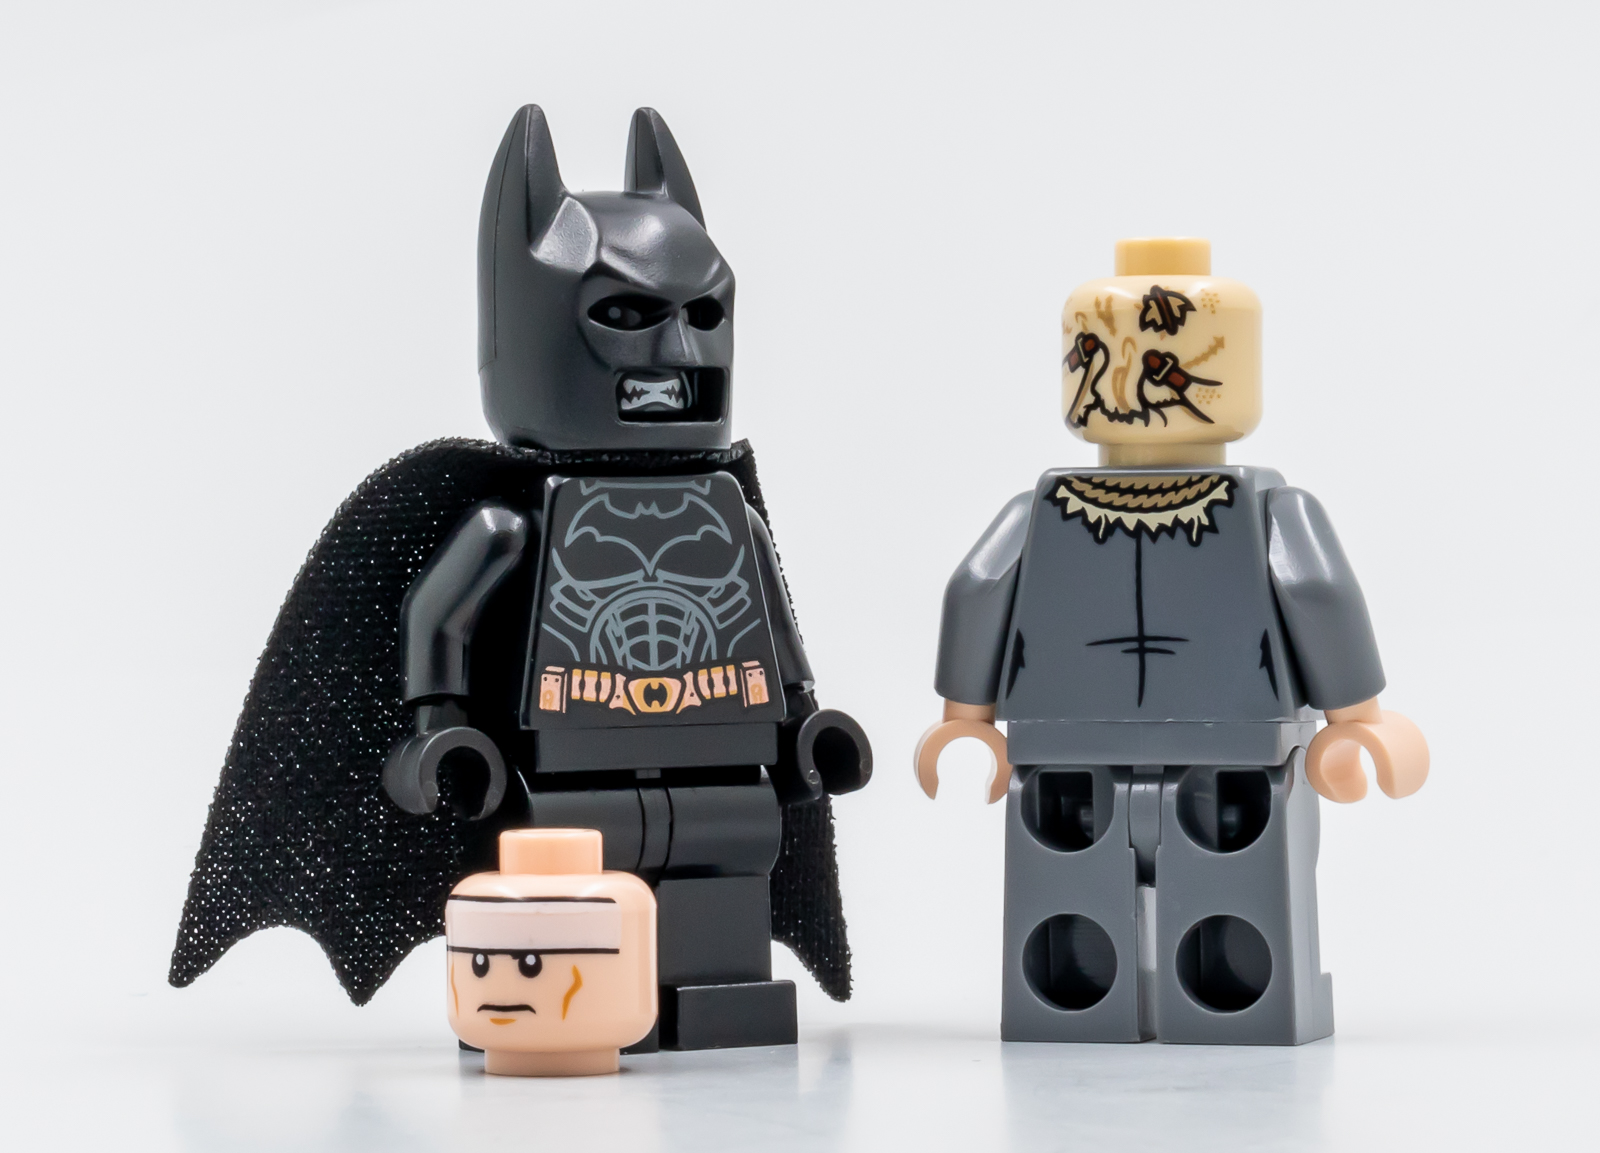  LEGO DC Batman Batmobile Tumbler: Scarecrow Showdown